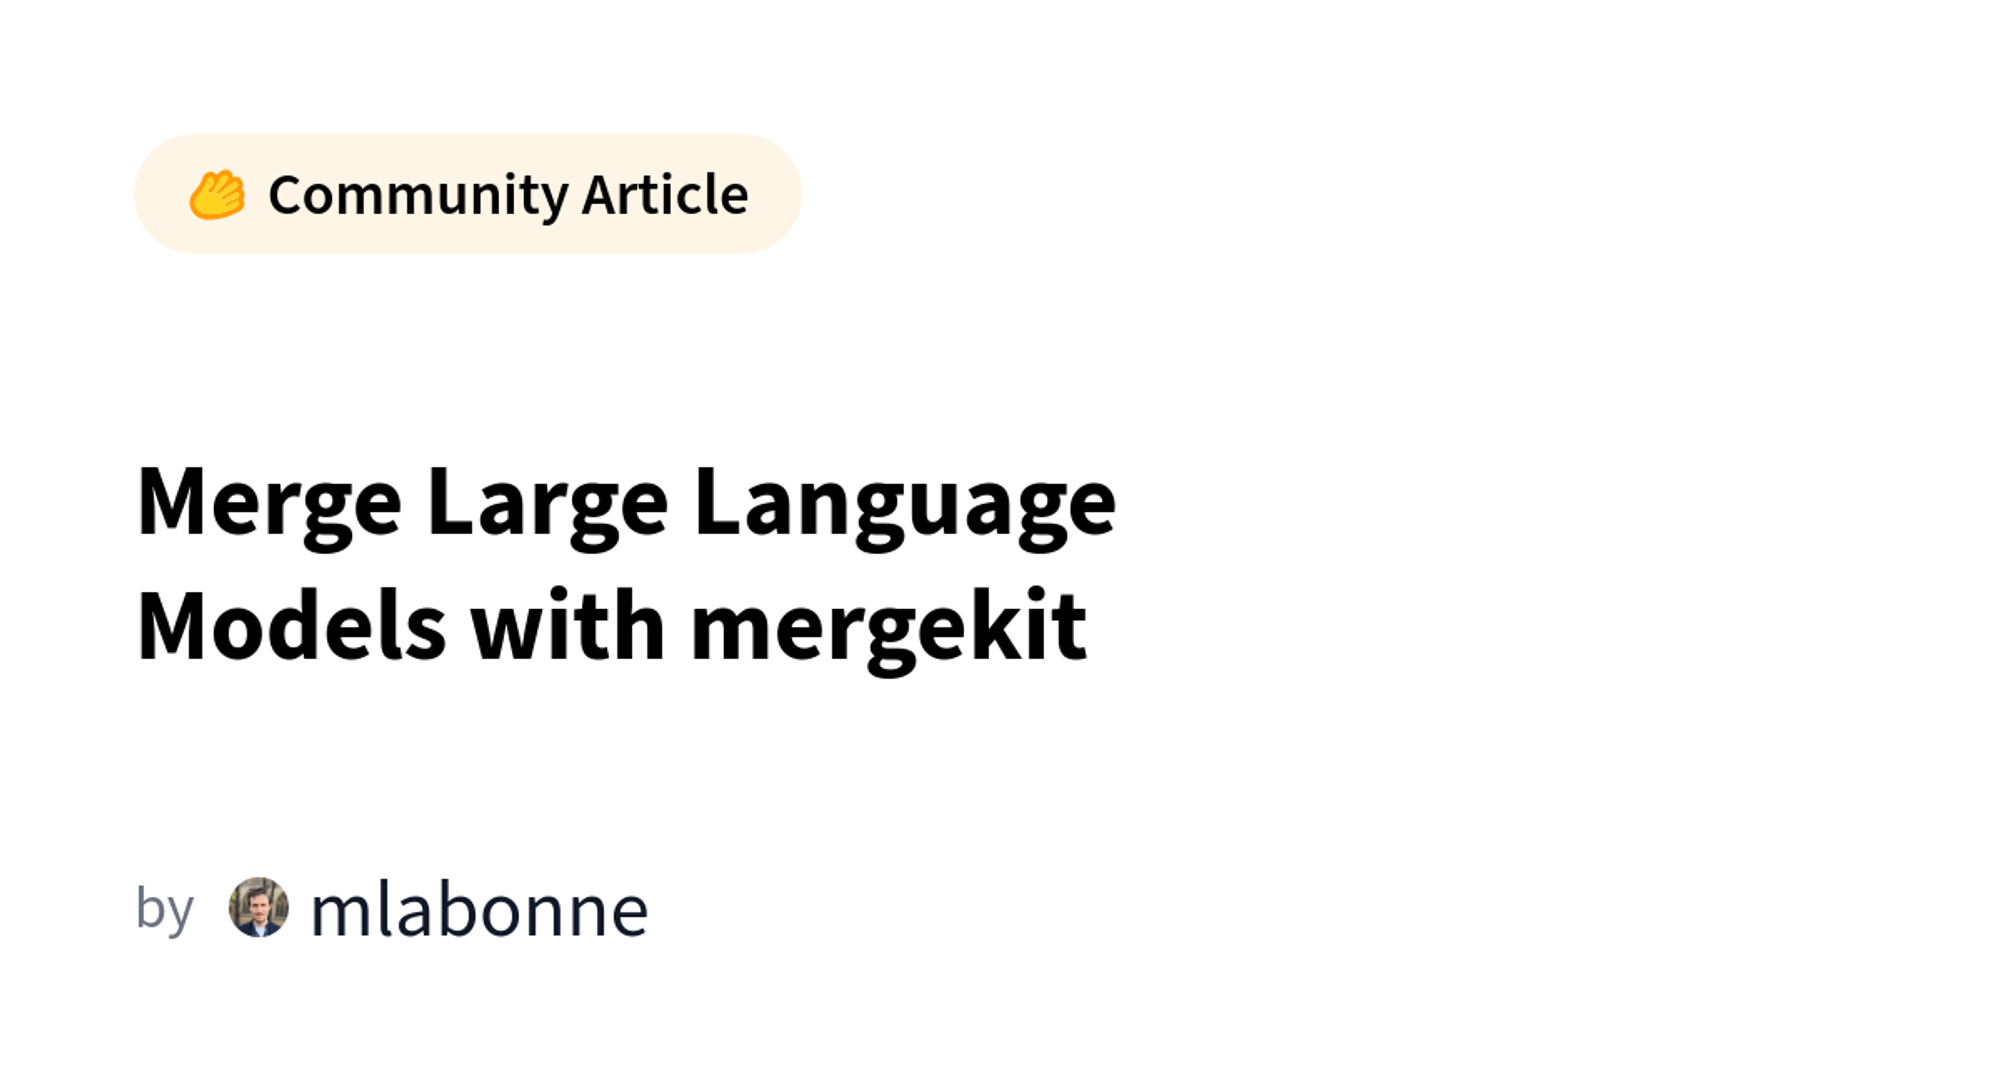 Merge Large Language Models with mergekit